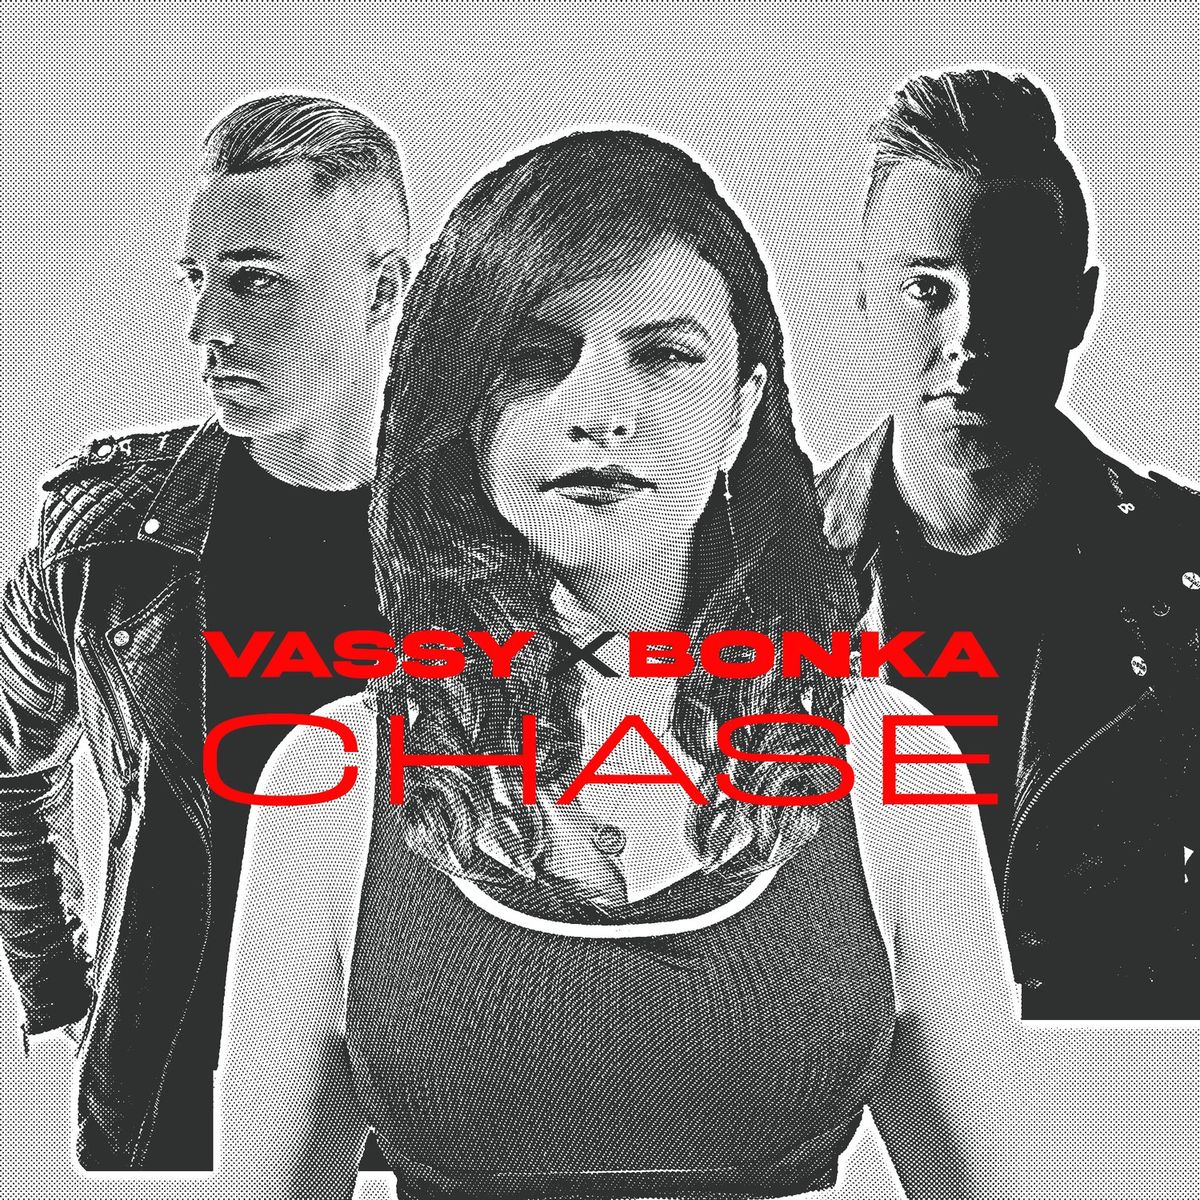 VASSY & Bonka - Chase (JaySounds Remix)